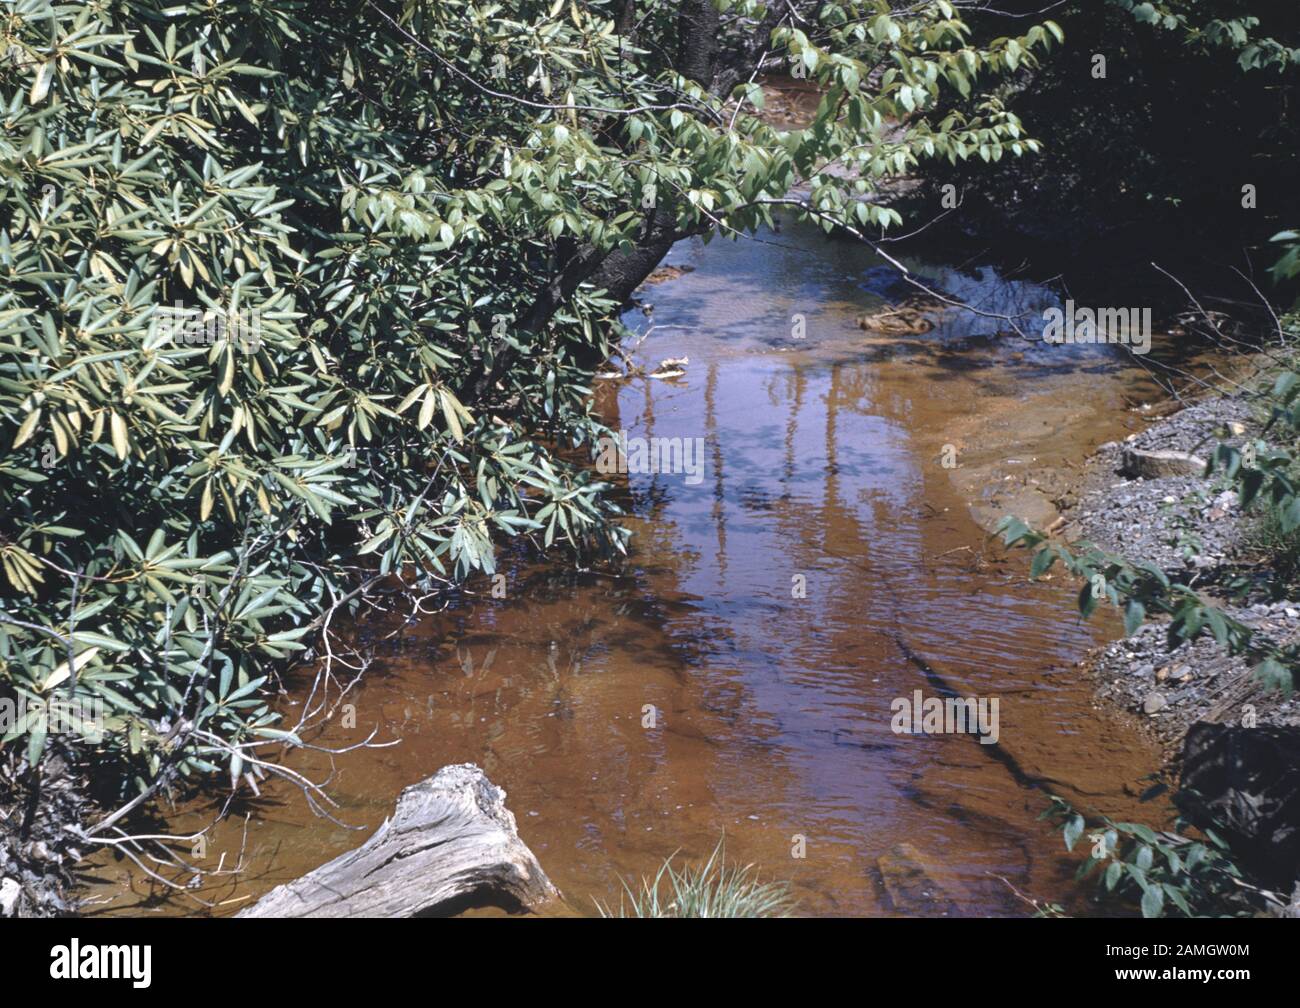 Nakuläres Foto, aufgenommen auf einer analogen 35-mm-Filmtransparenz, vermutet, dass grüne Pflanzen am Körper des Wassers tagsüber, 1965, abgebildet sind. Wichtige Themen/Objekte, die entdeckt wurden, sind Wasser, Baum, Strom, Fluss, Pflanze, Riparischer Wald und Natur. () Stockfoto